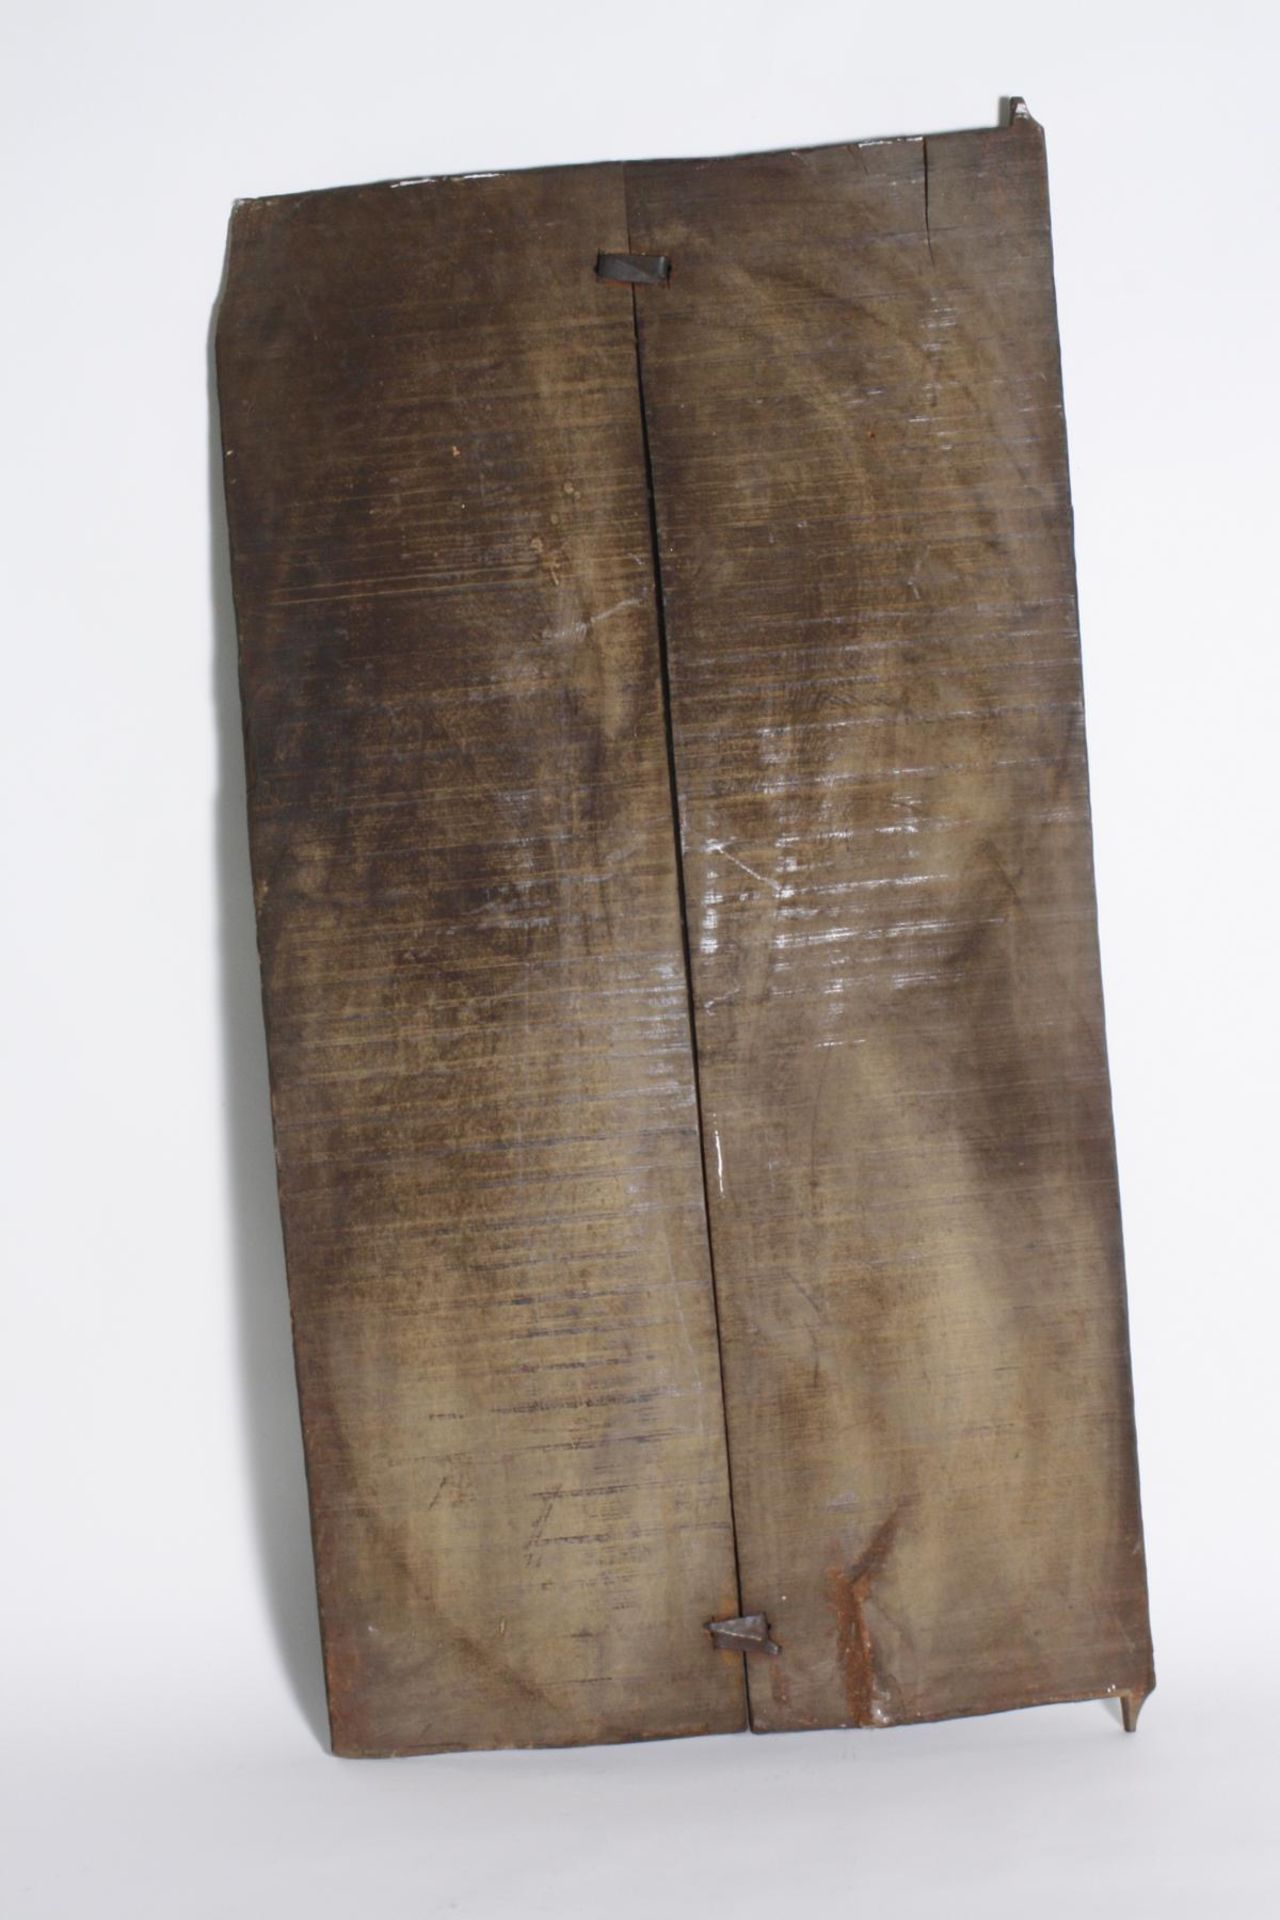 Kornspeichertür, Baule, ElfenbeinküsteHolz, geschnitzt, zweiteilig, mittig von zwei Eisenklammern - Bild 2 aus 2